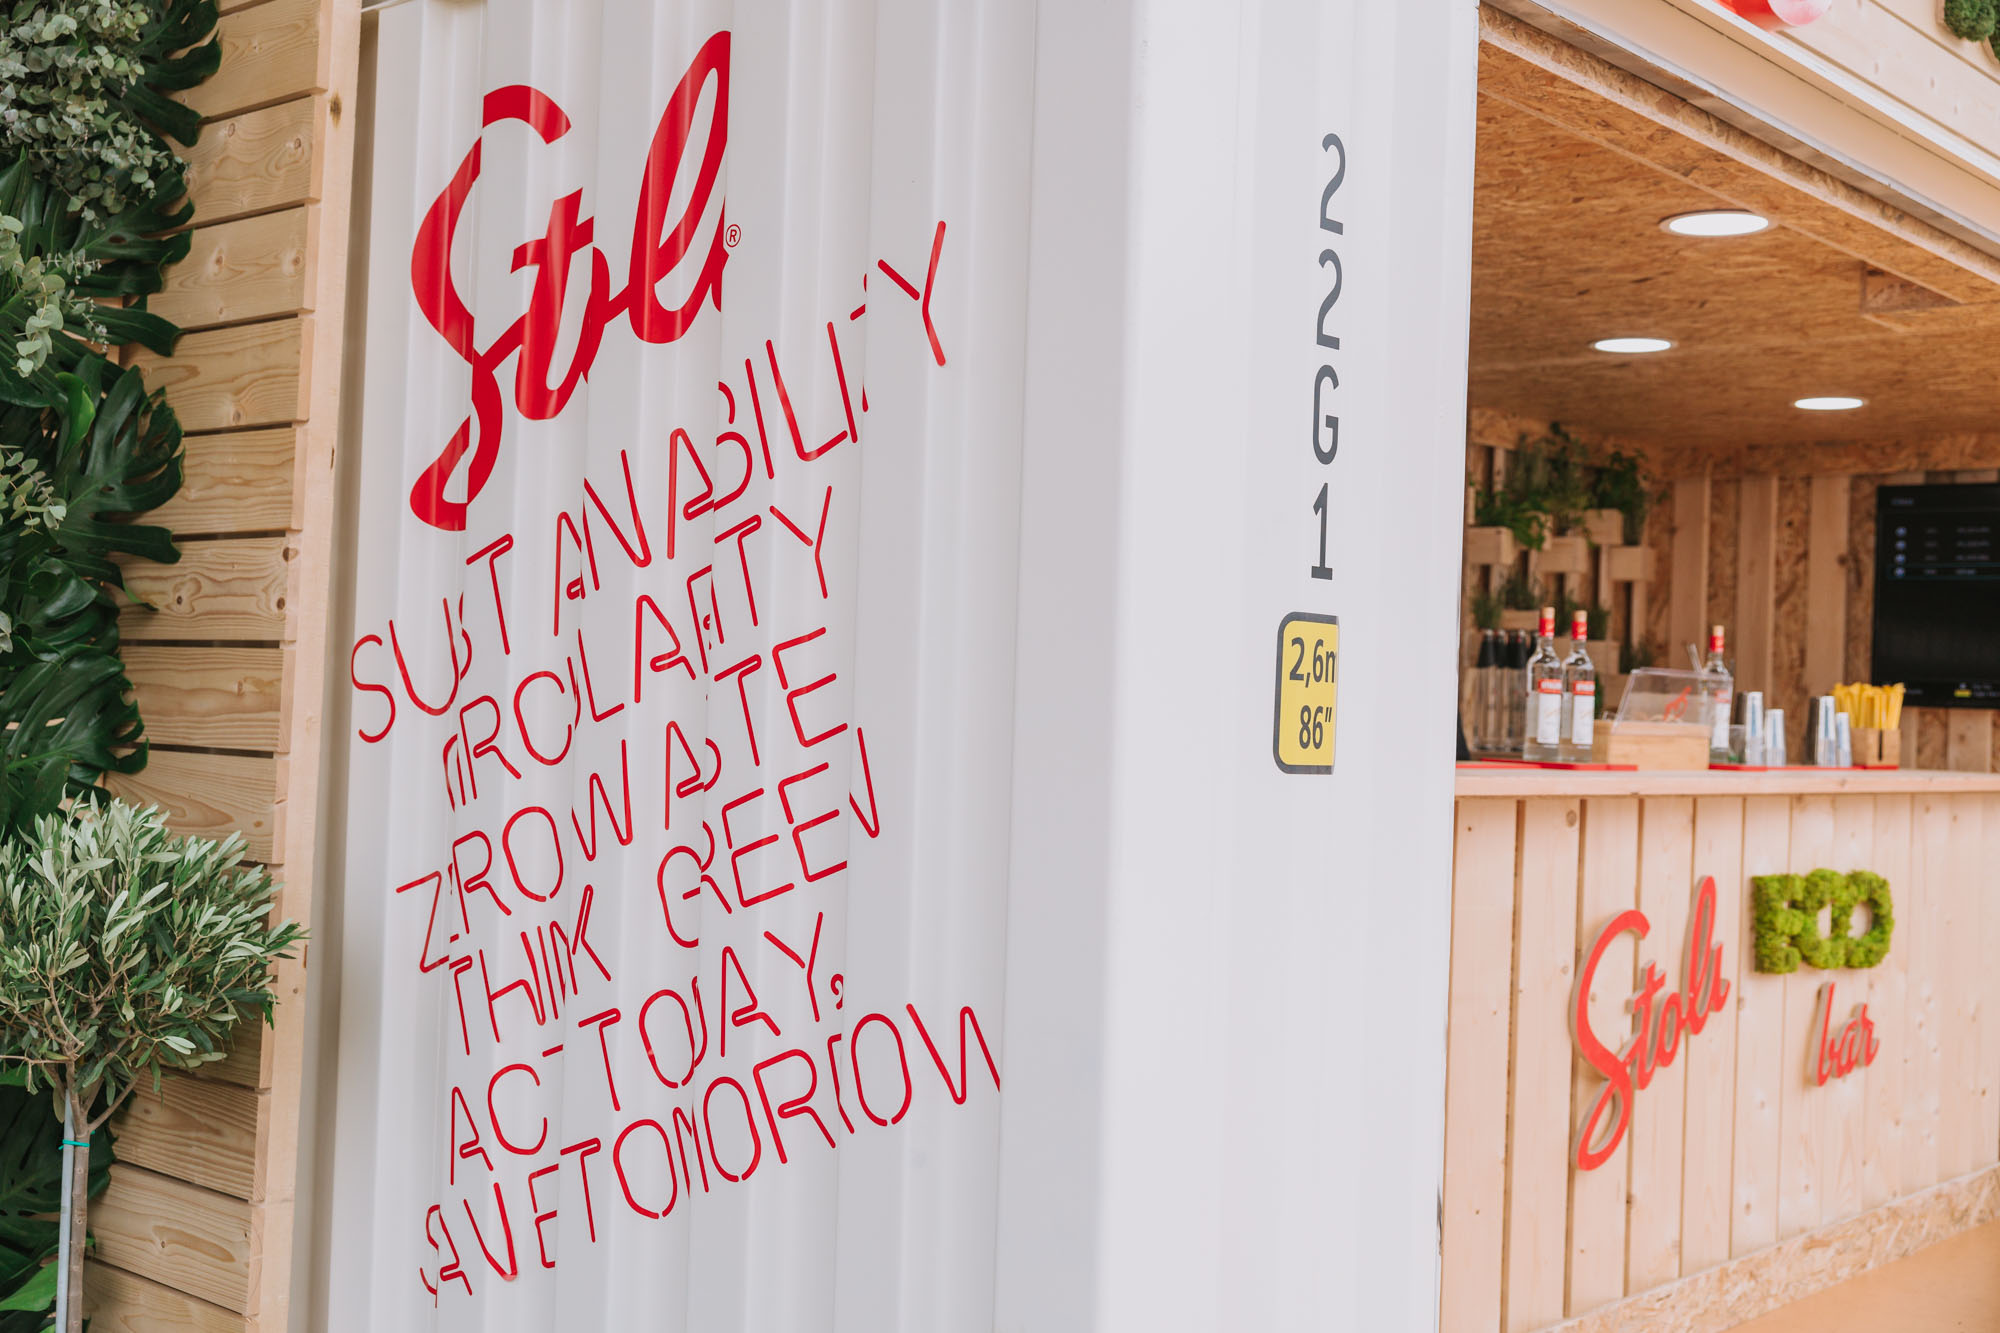  Το πρώτο Stoli Vodka Eco Bar αποτελεί την επιτομή του green thinking 